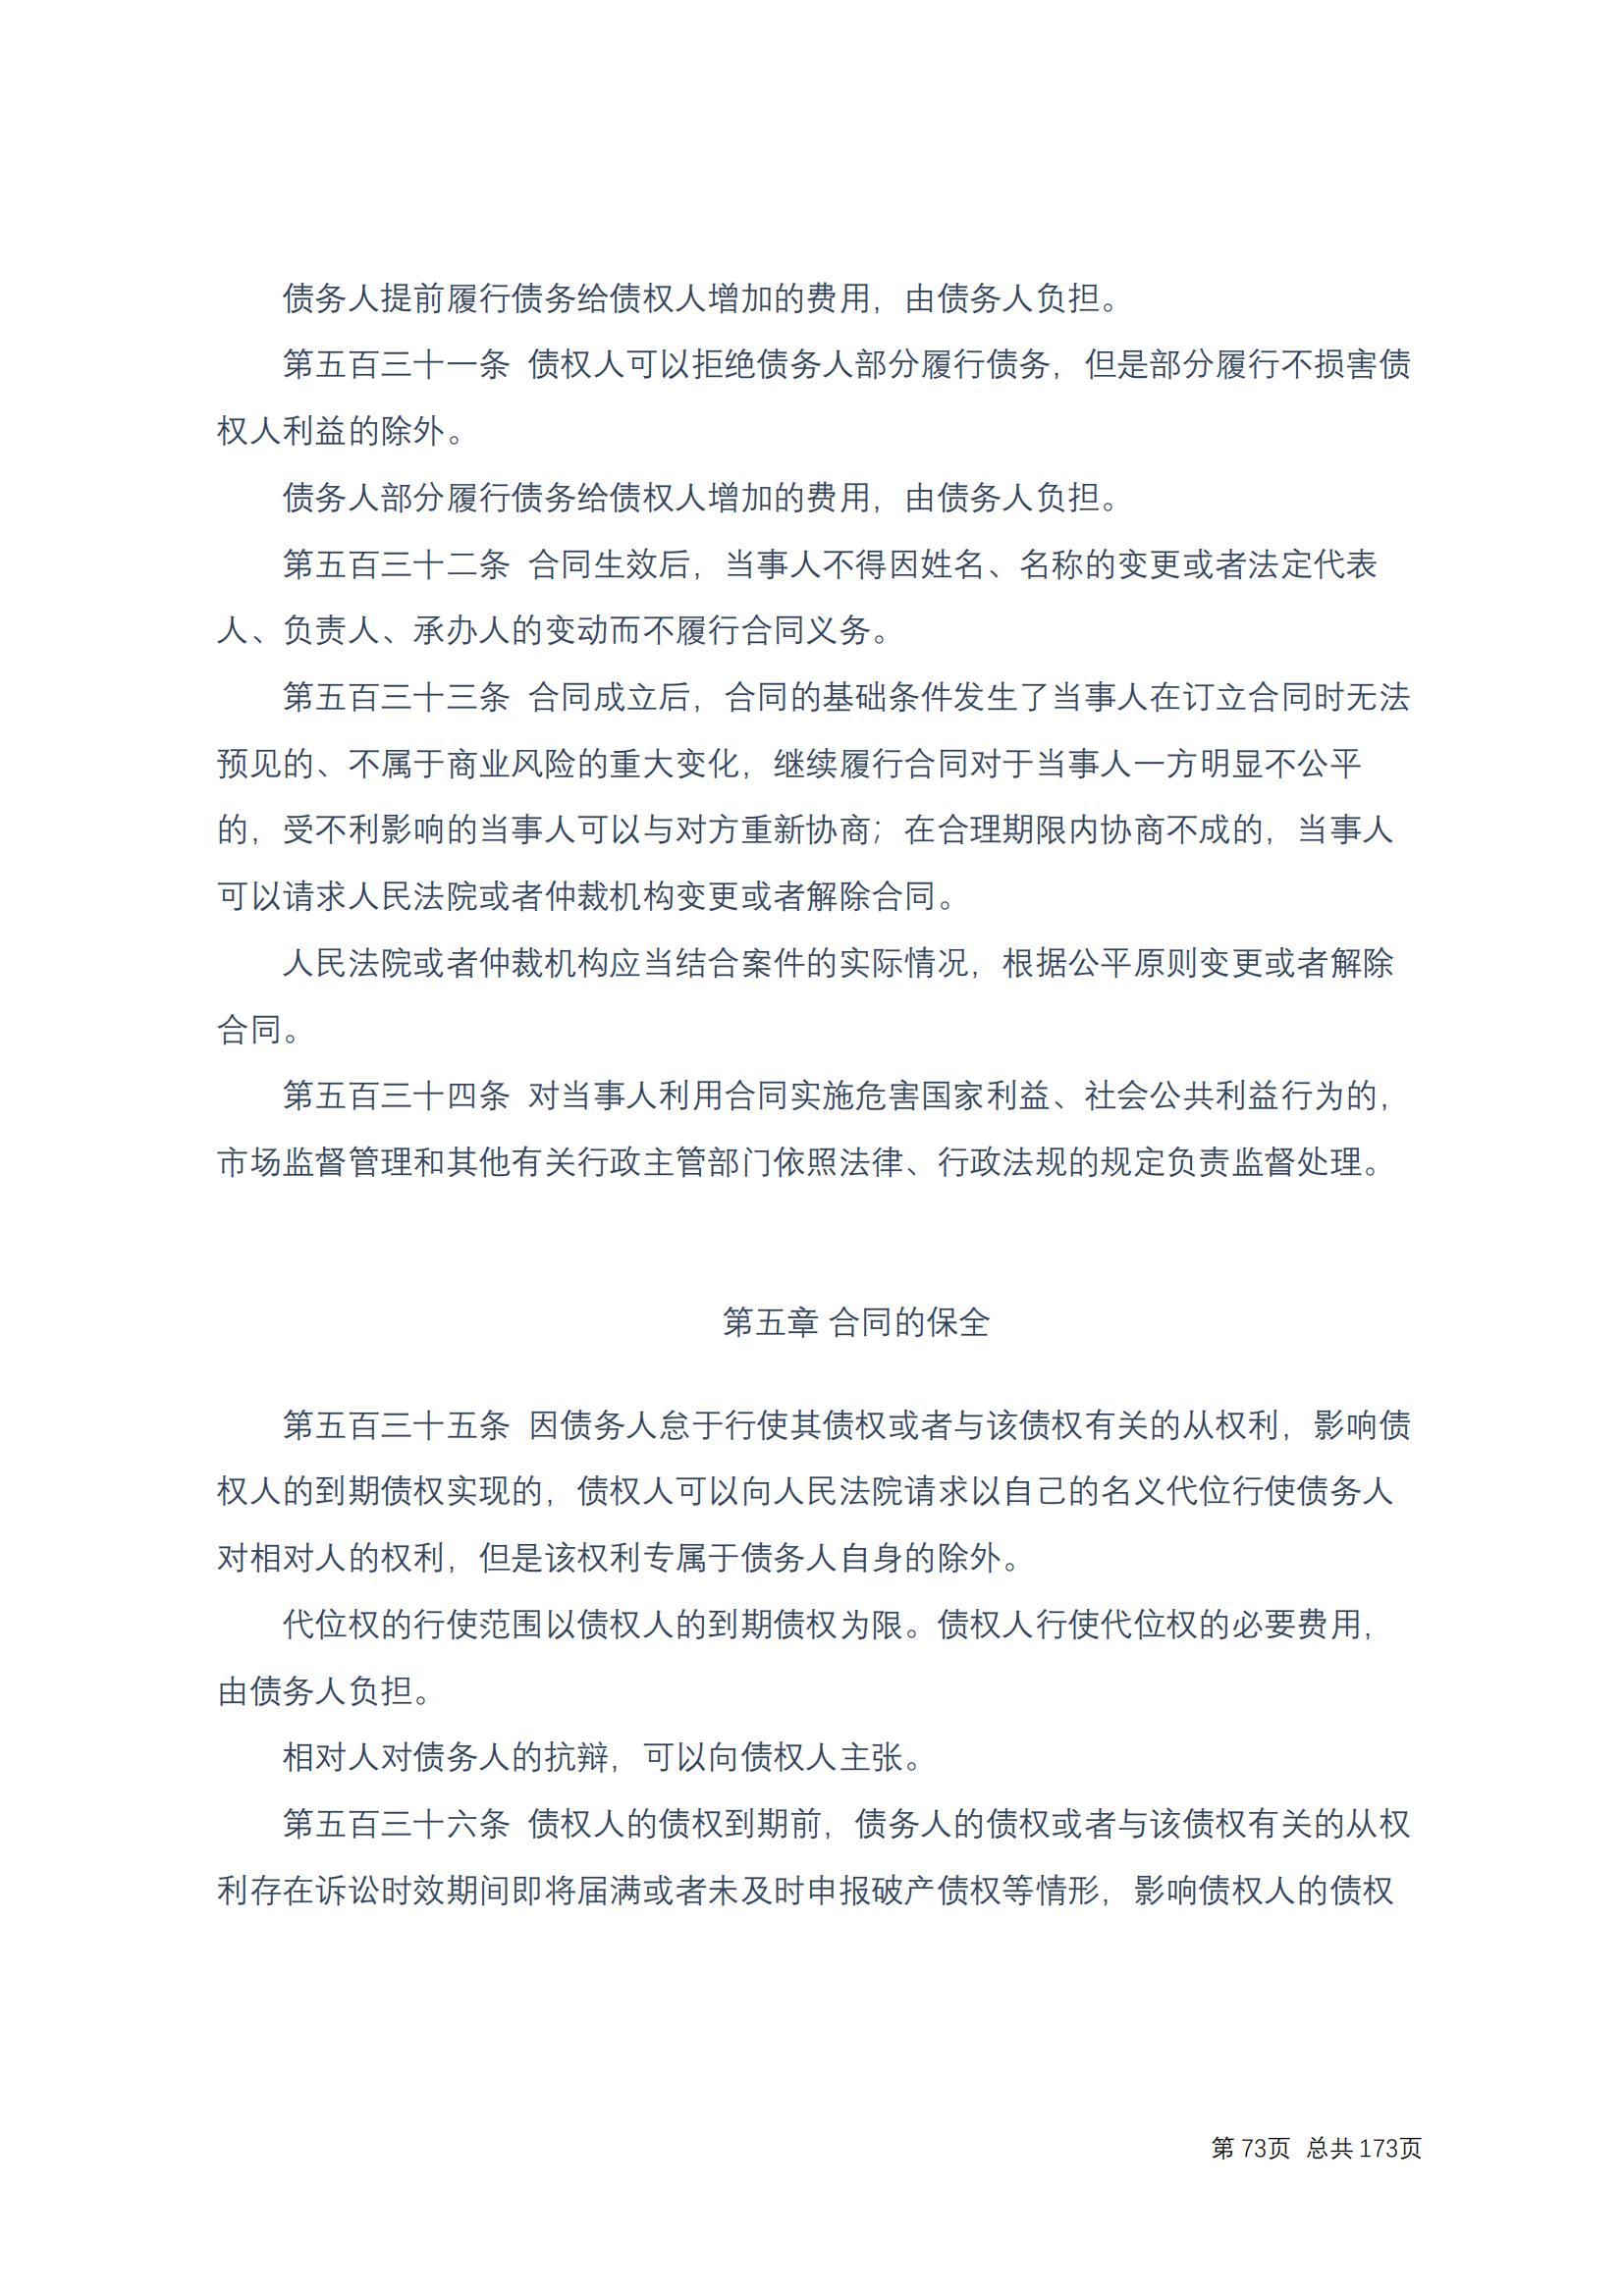 中华人民共和国民法典 修改过_72